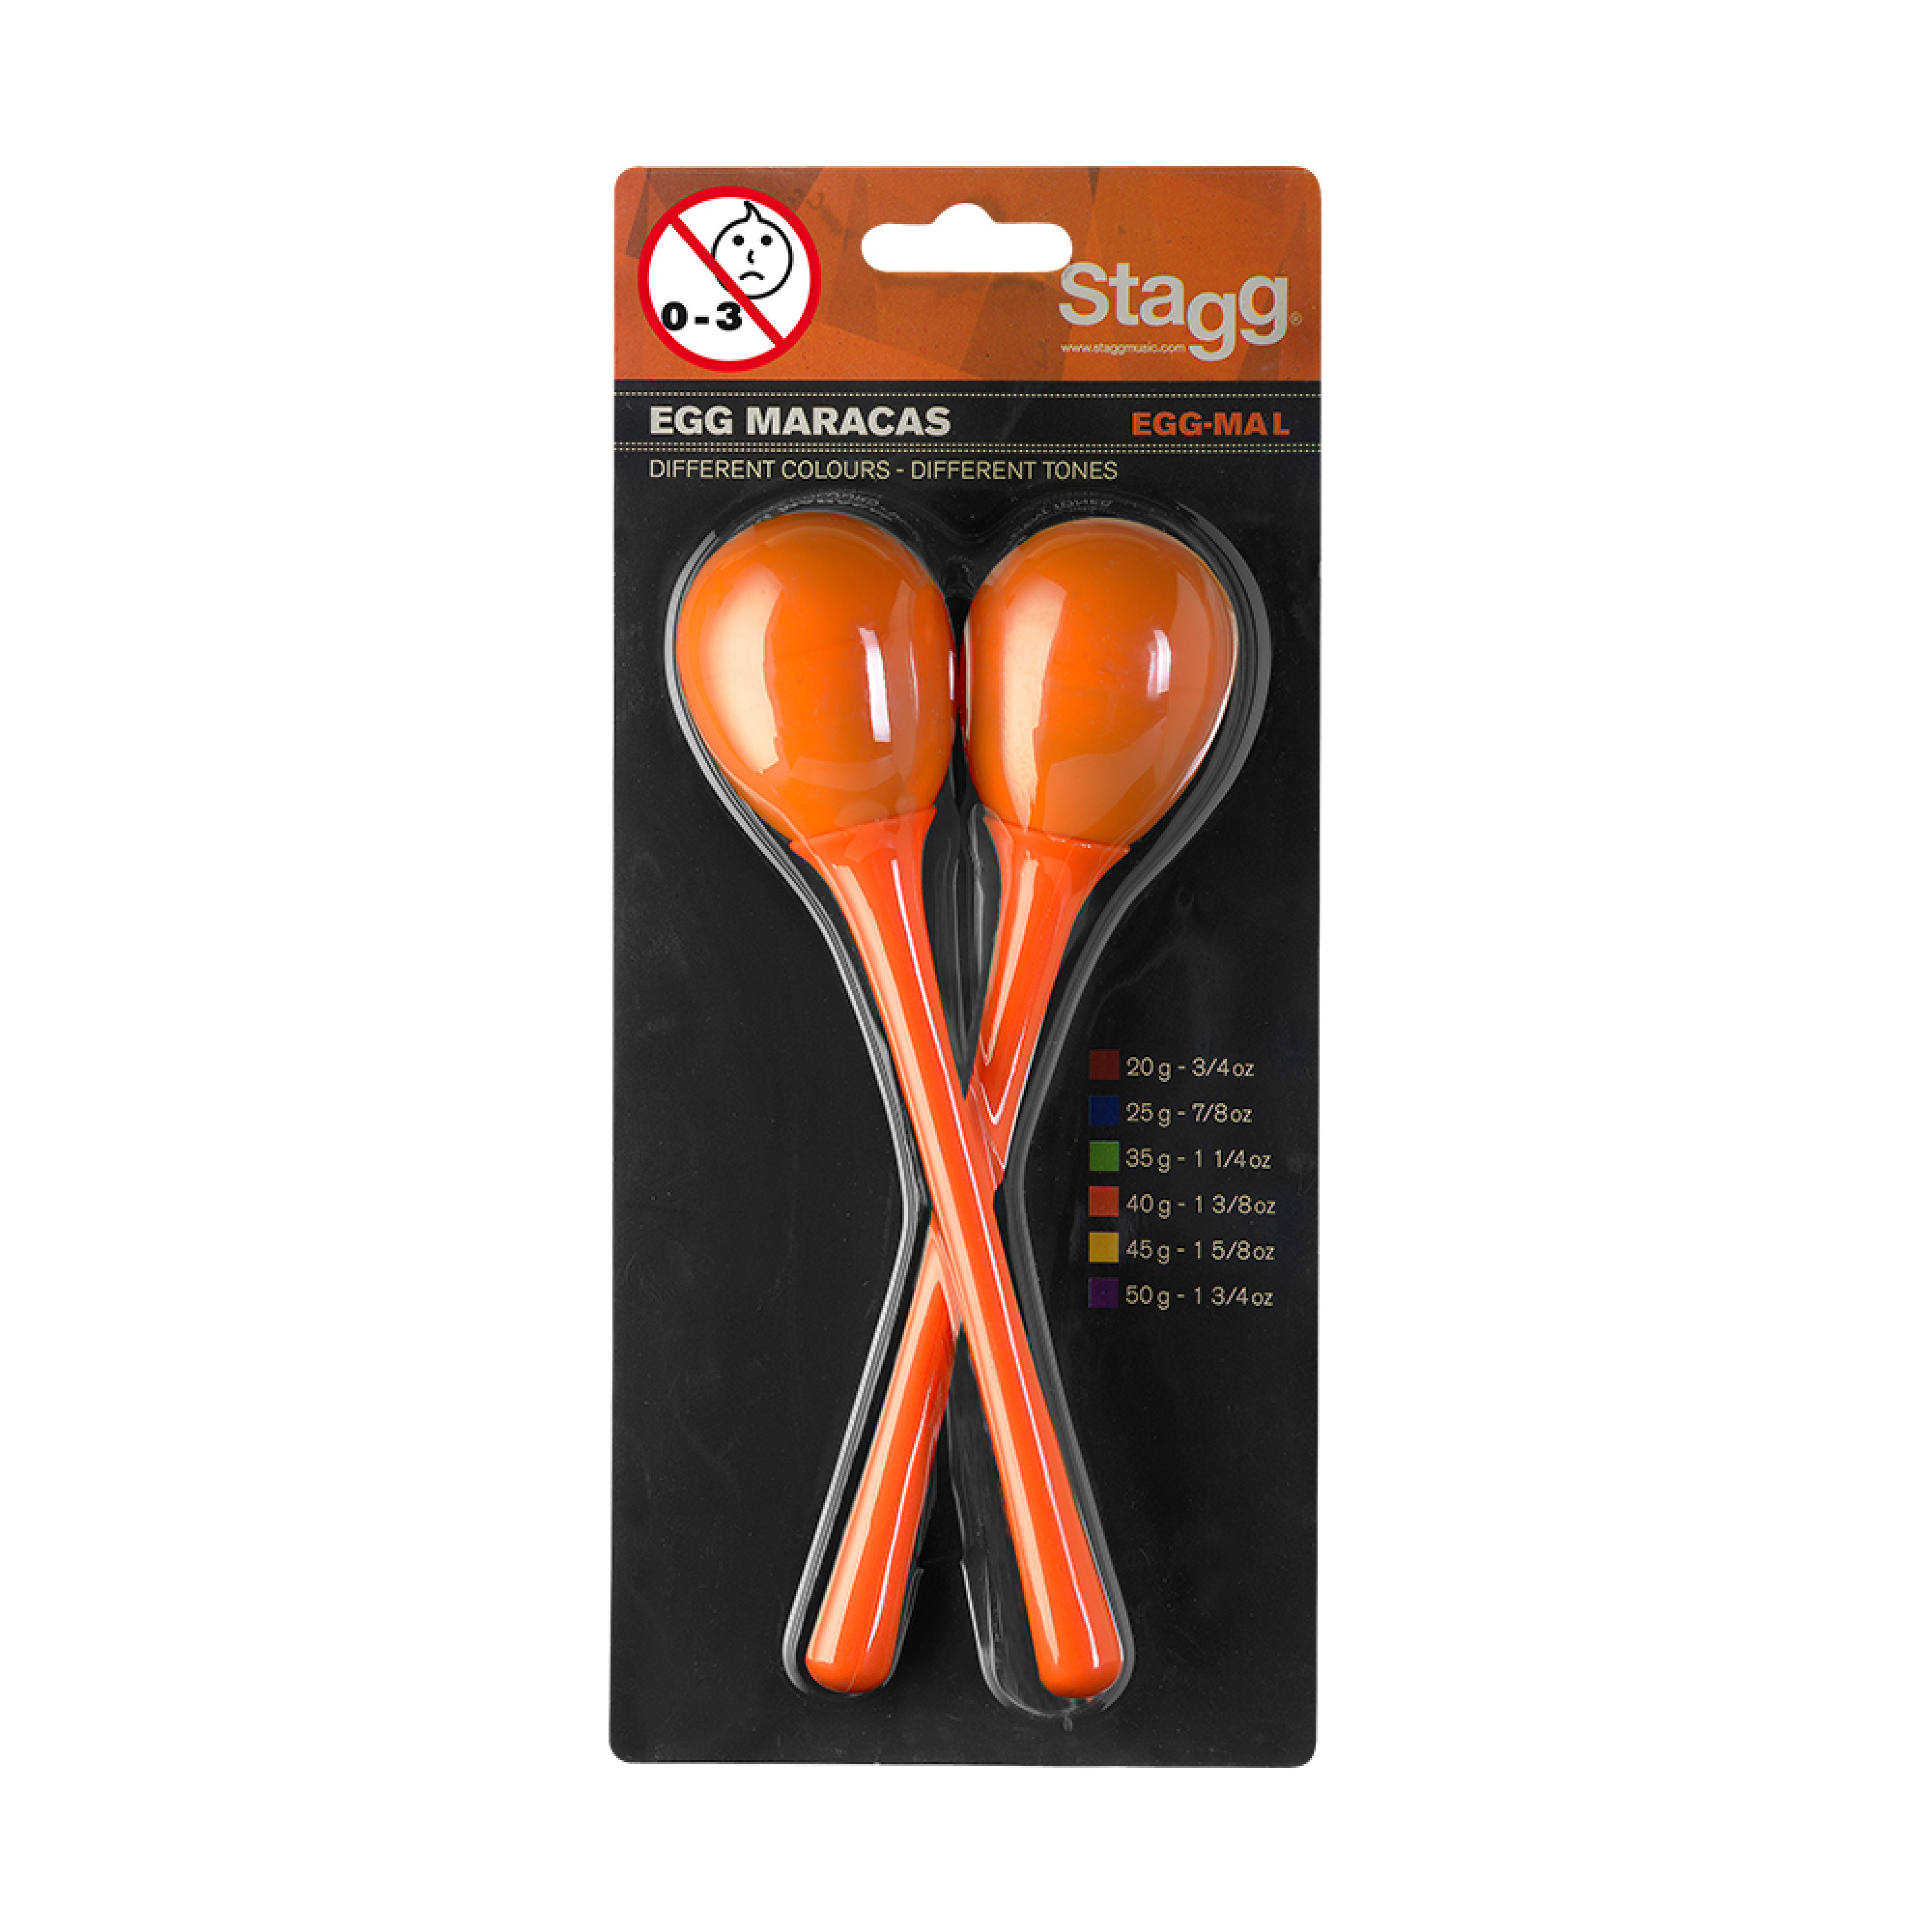 Stagg Oeufs  Maracas Orange Par Paire - Egg Maracas Long Orange - Shake percussions - Variation 1